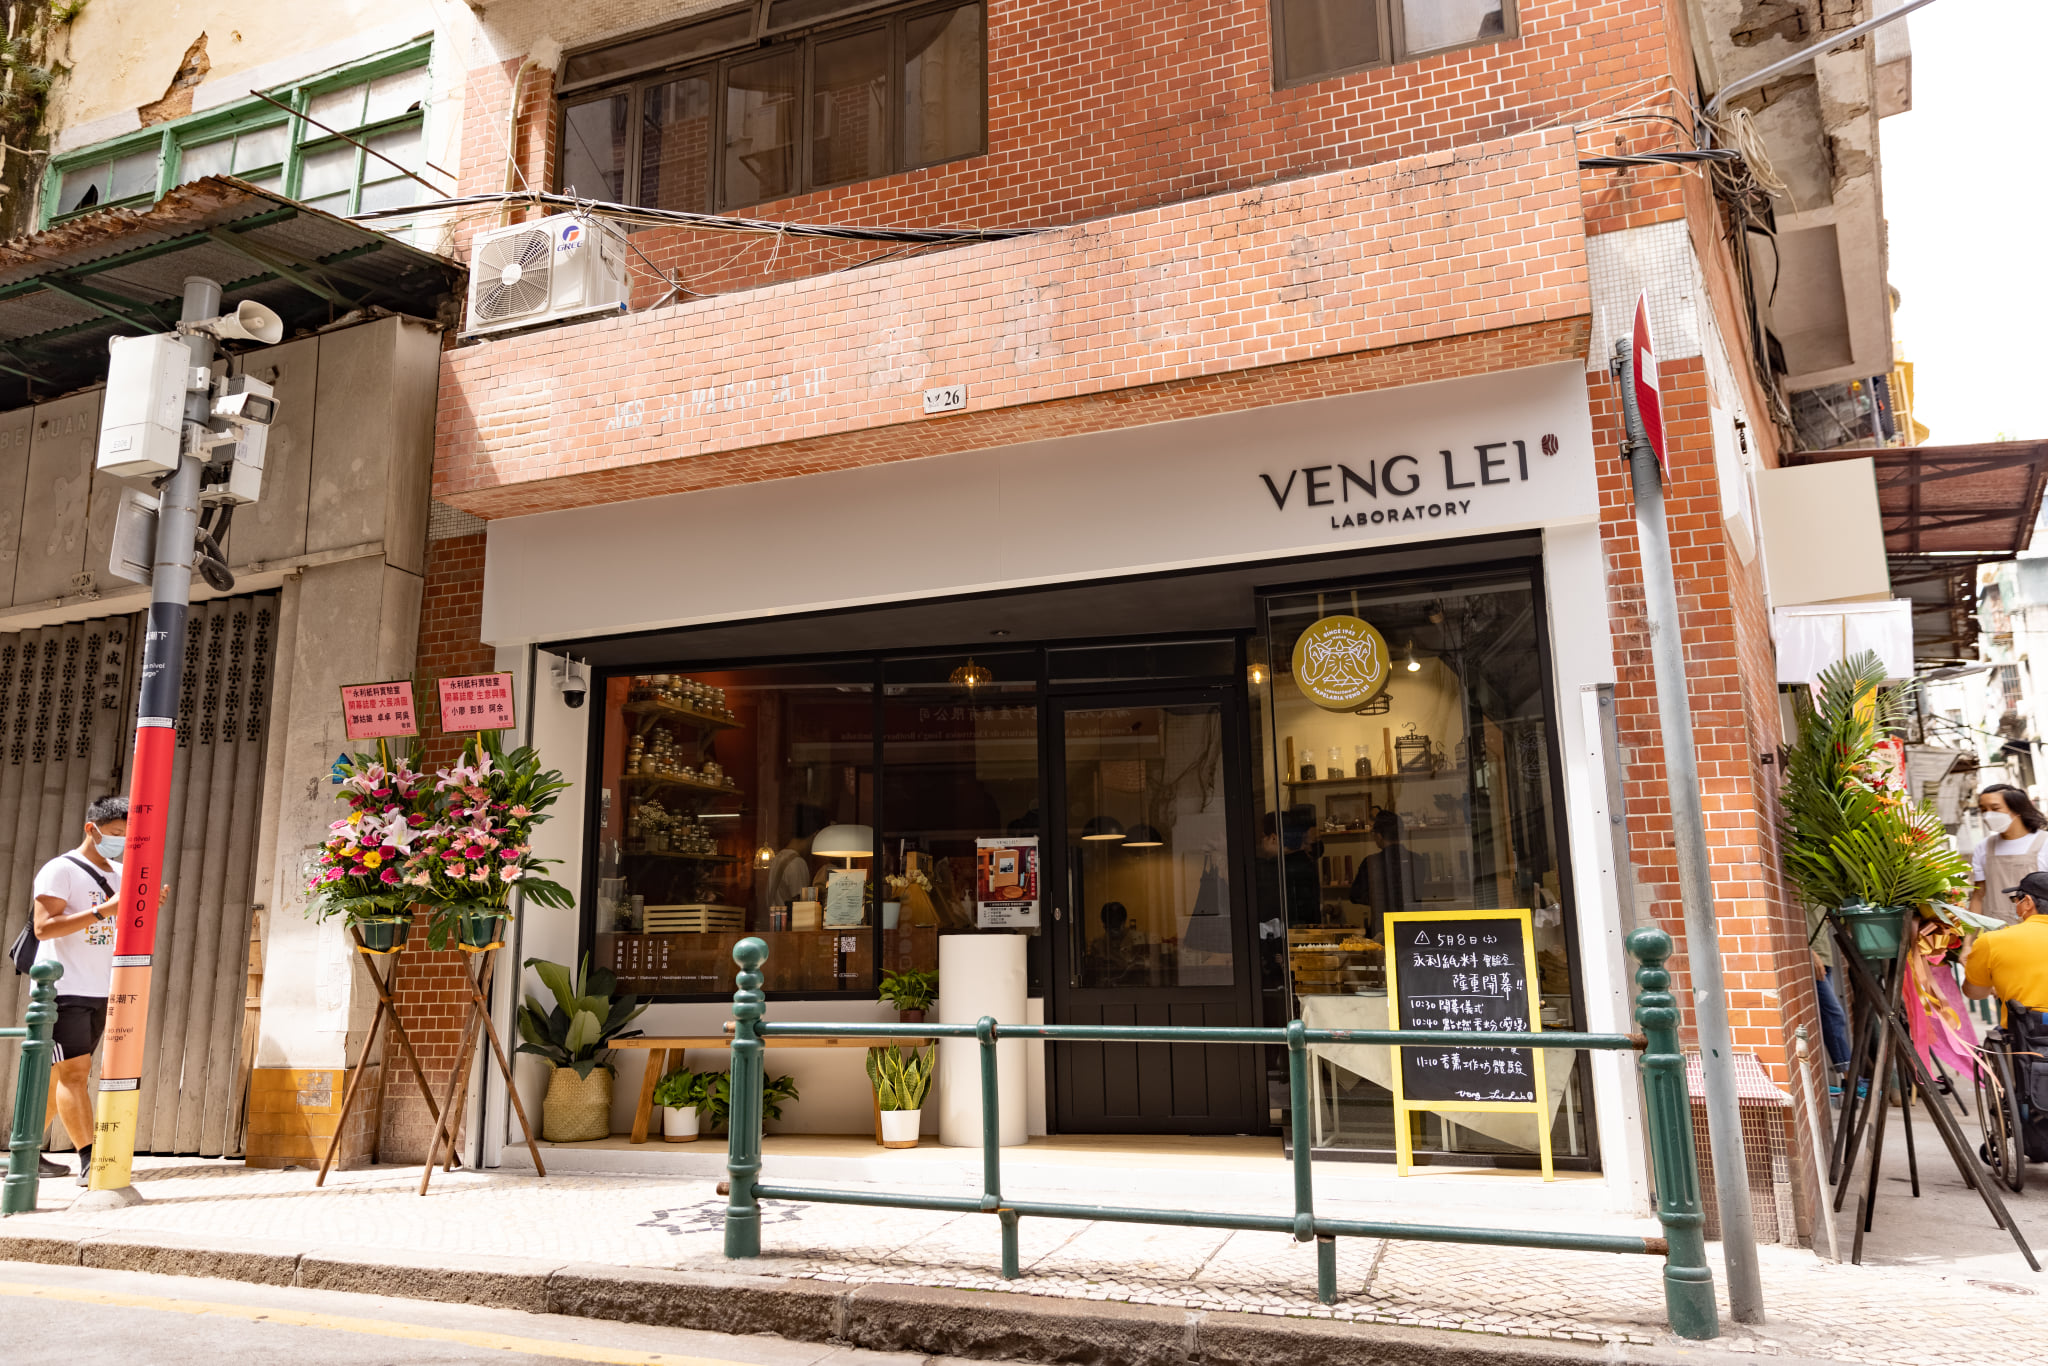 Veng Lei Laboratory